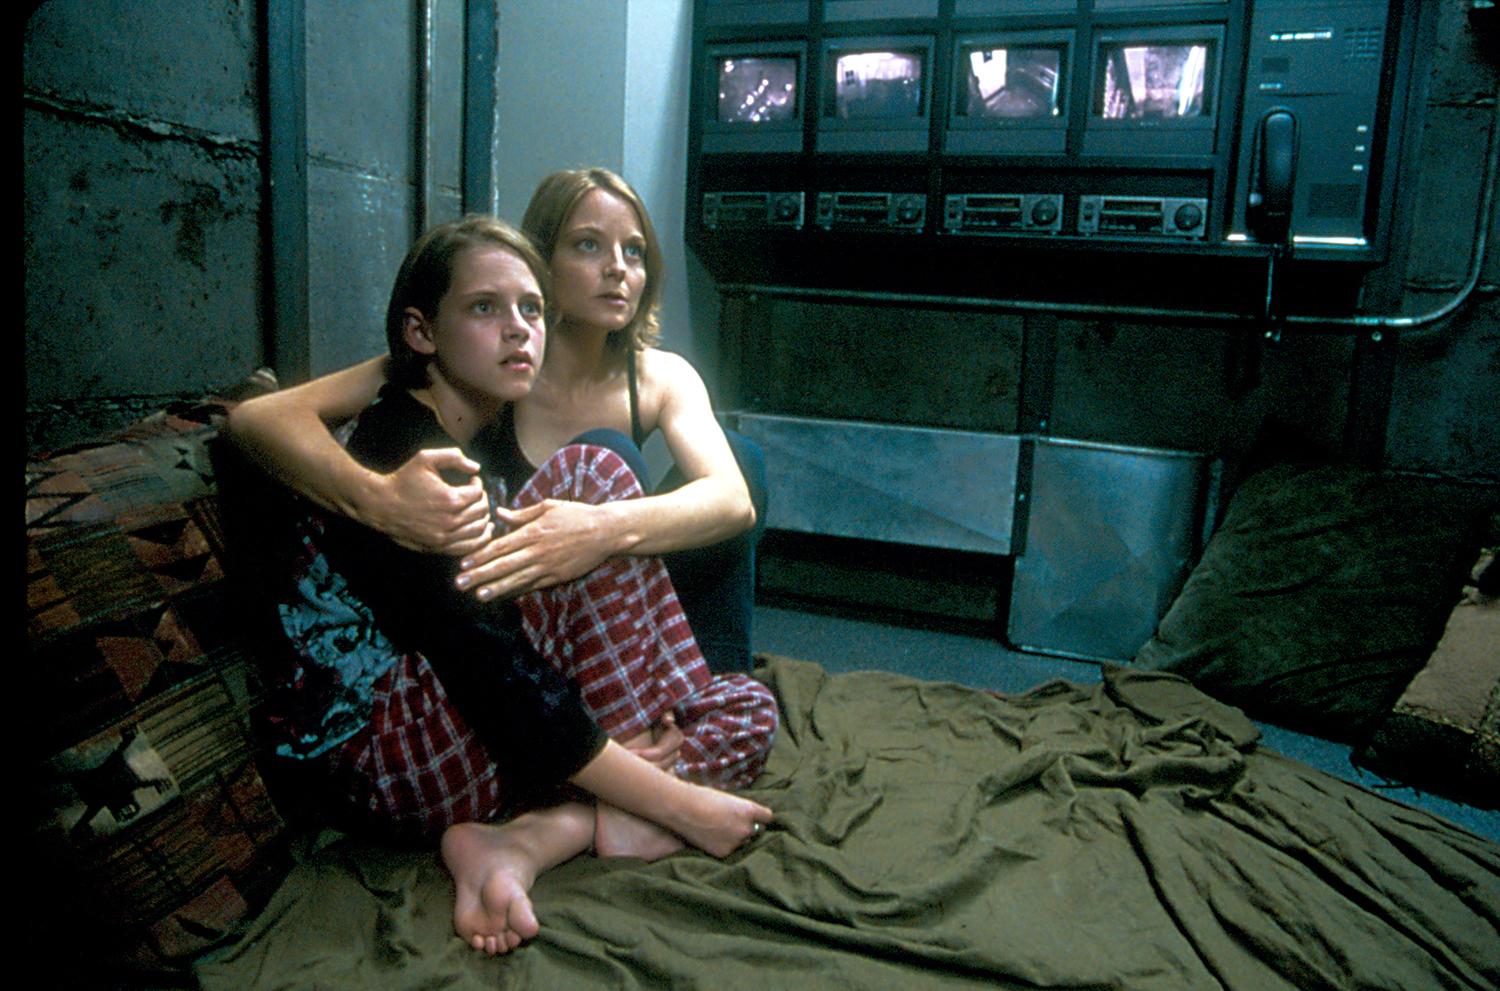 "Panic Room" med Jodie Foster och Kristen Stewart handlar om en mor och en dotter som råkar ut för inbrottstjuvar. Med nöd och näppe lyckas de ta sig till sitt panic room, ett slags skyddsrum.